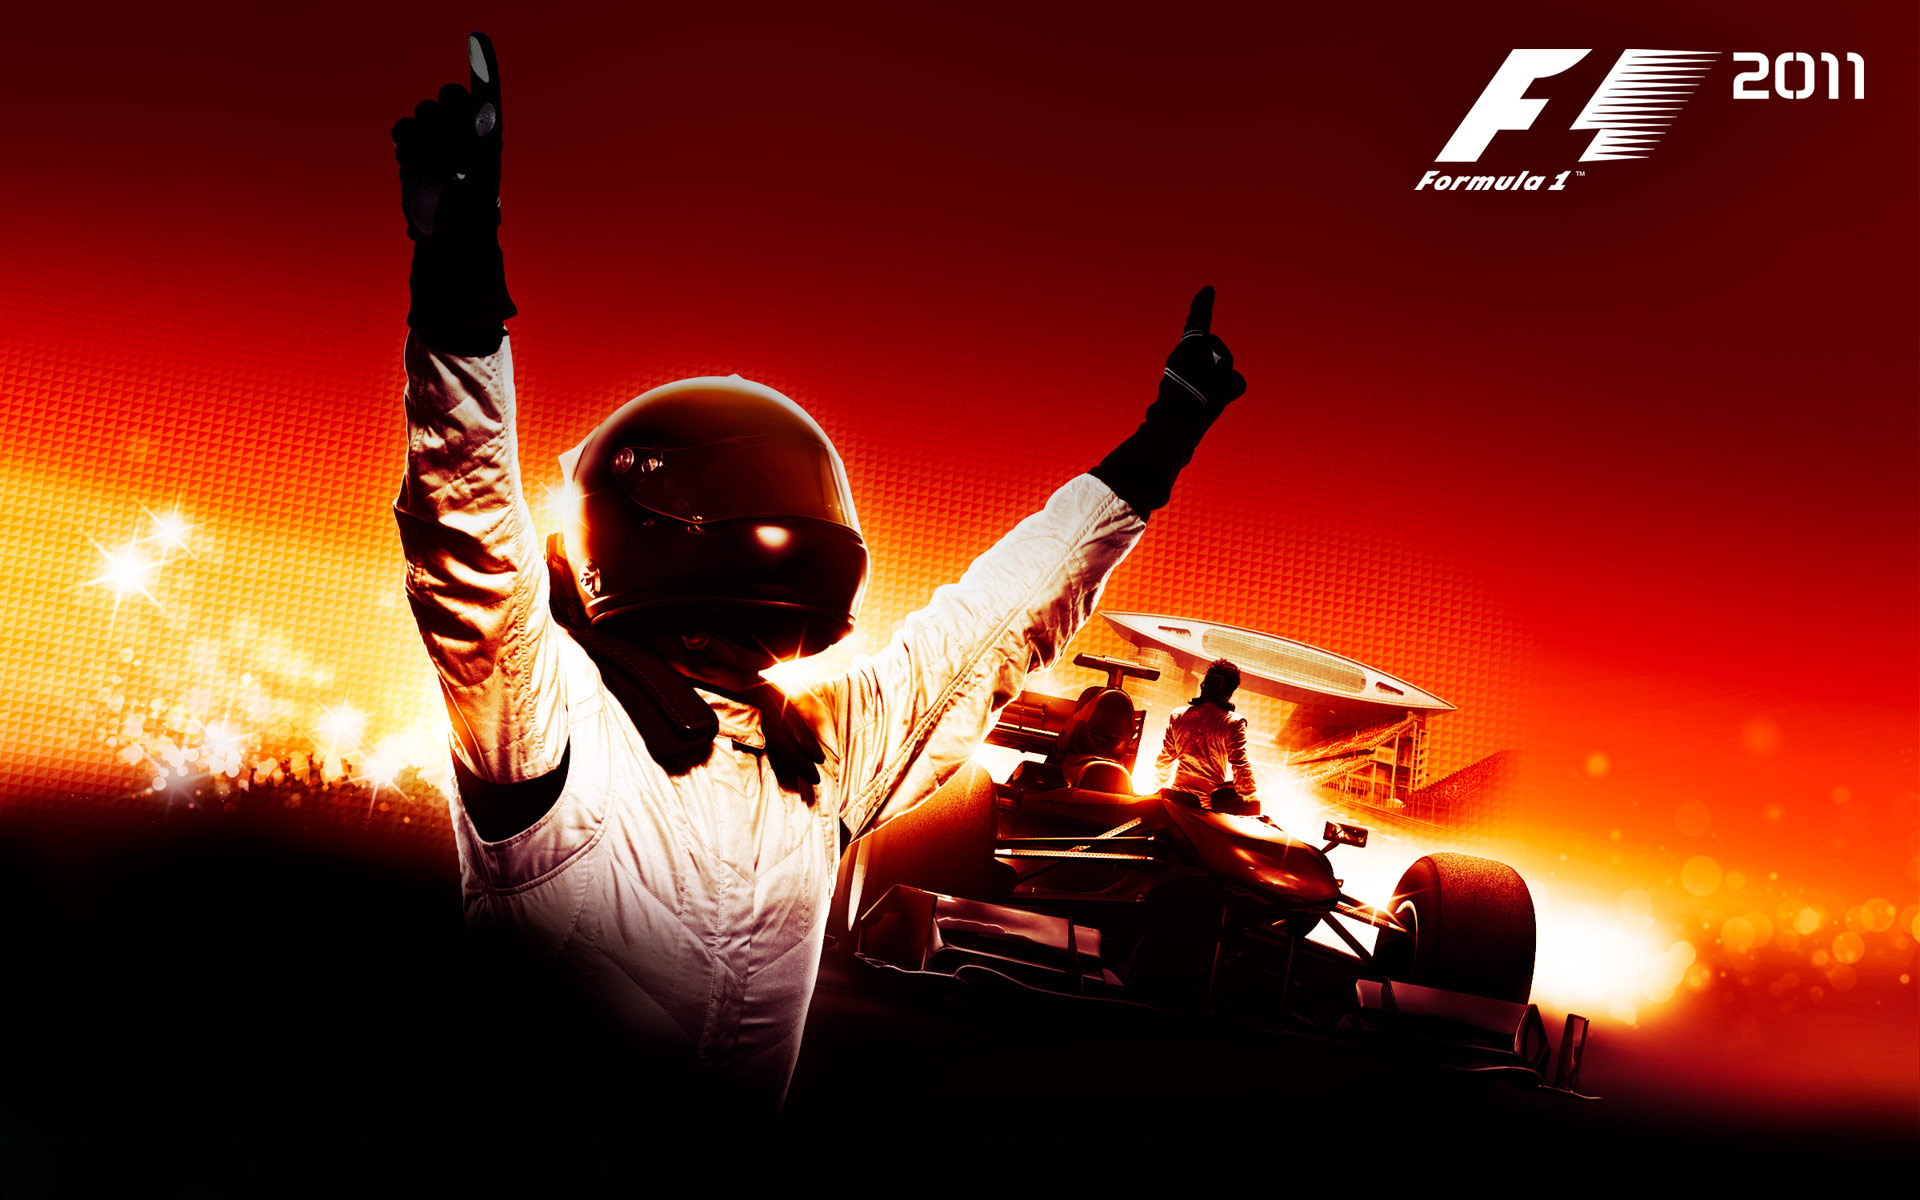 Скачать картинку Формула 1, Видеоигры, Ф1 2011 в телефон бесплатно.